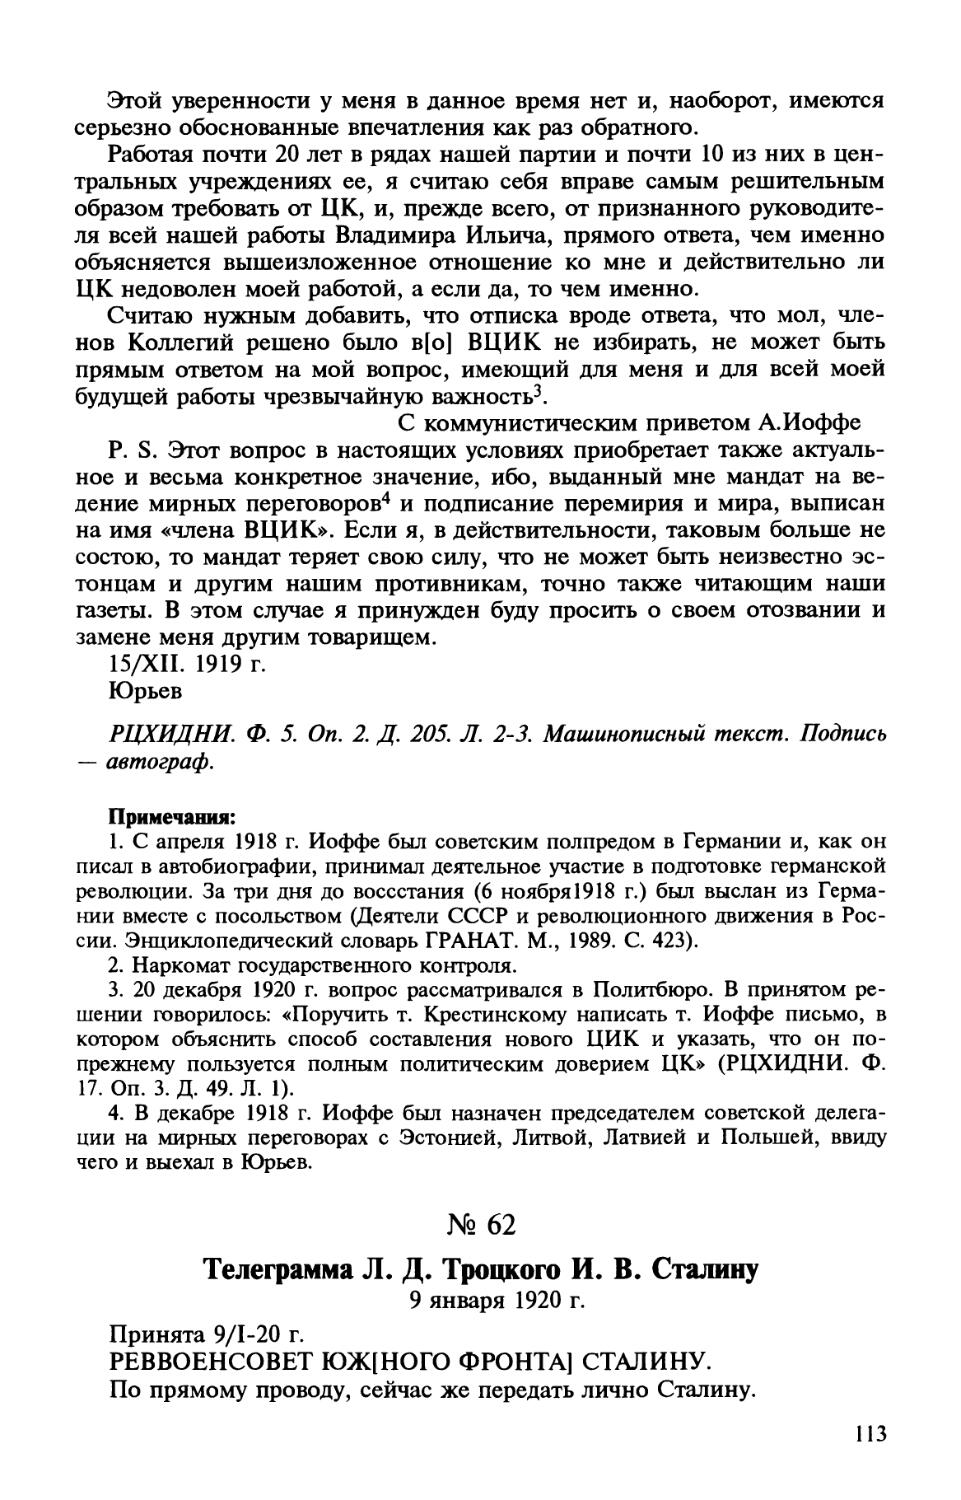 62. Телеграмма Л. Д. Троцкого И. В. Сталину. 9 января 1920 г.